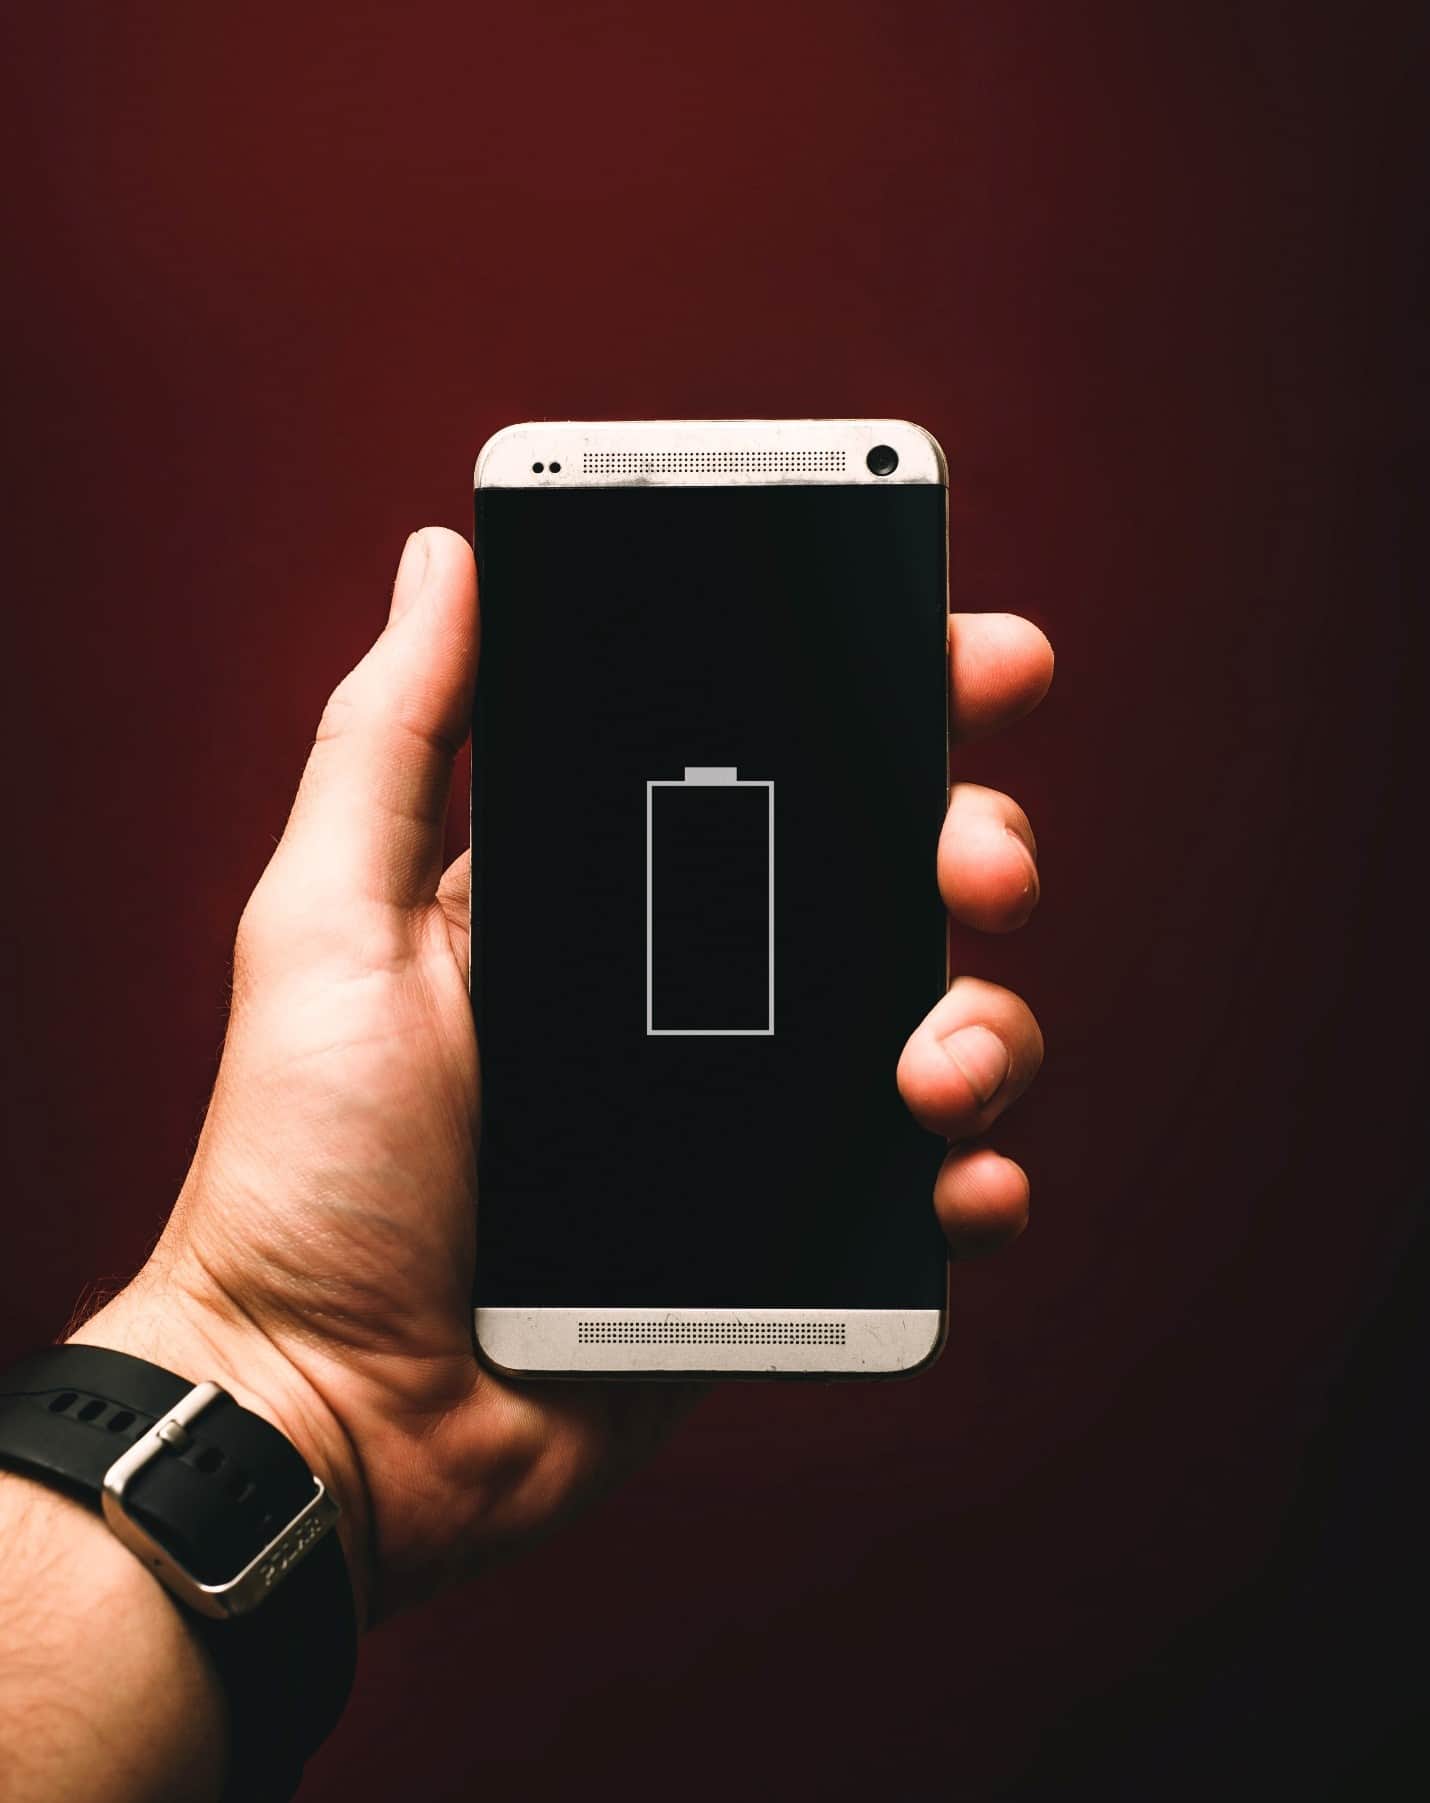 Faça a bateria do seu celular durar muito mais #dicas #android